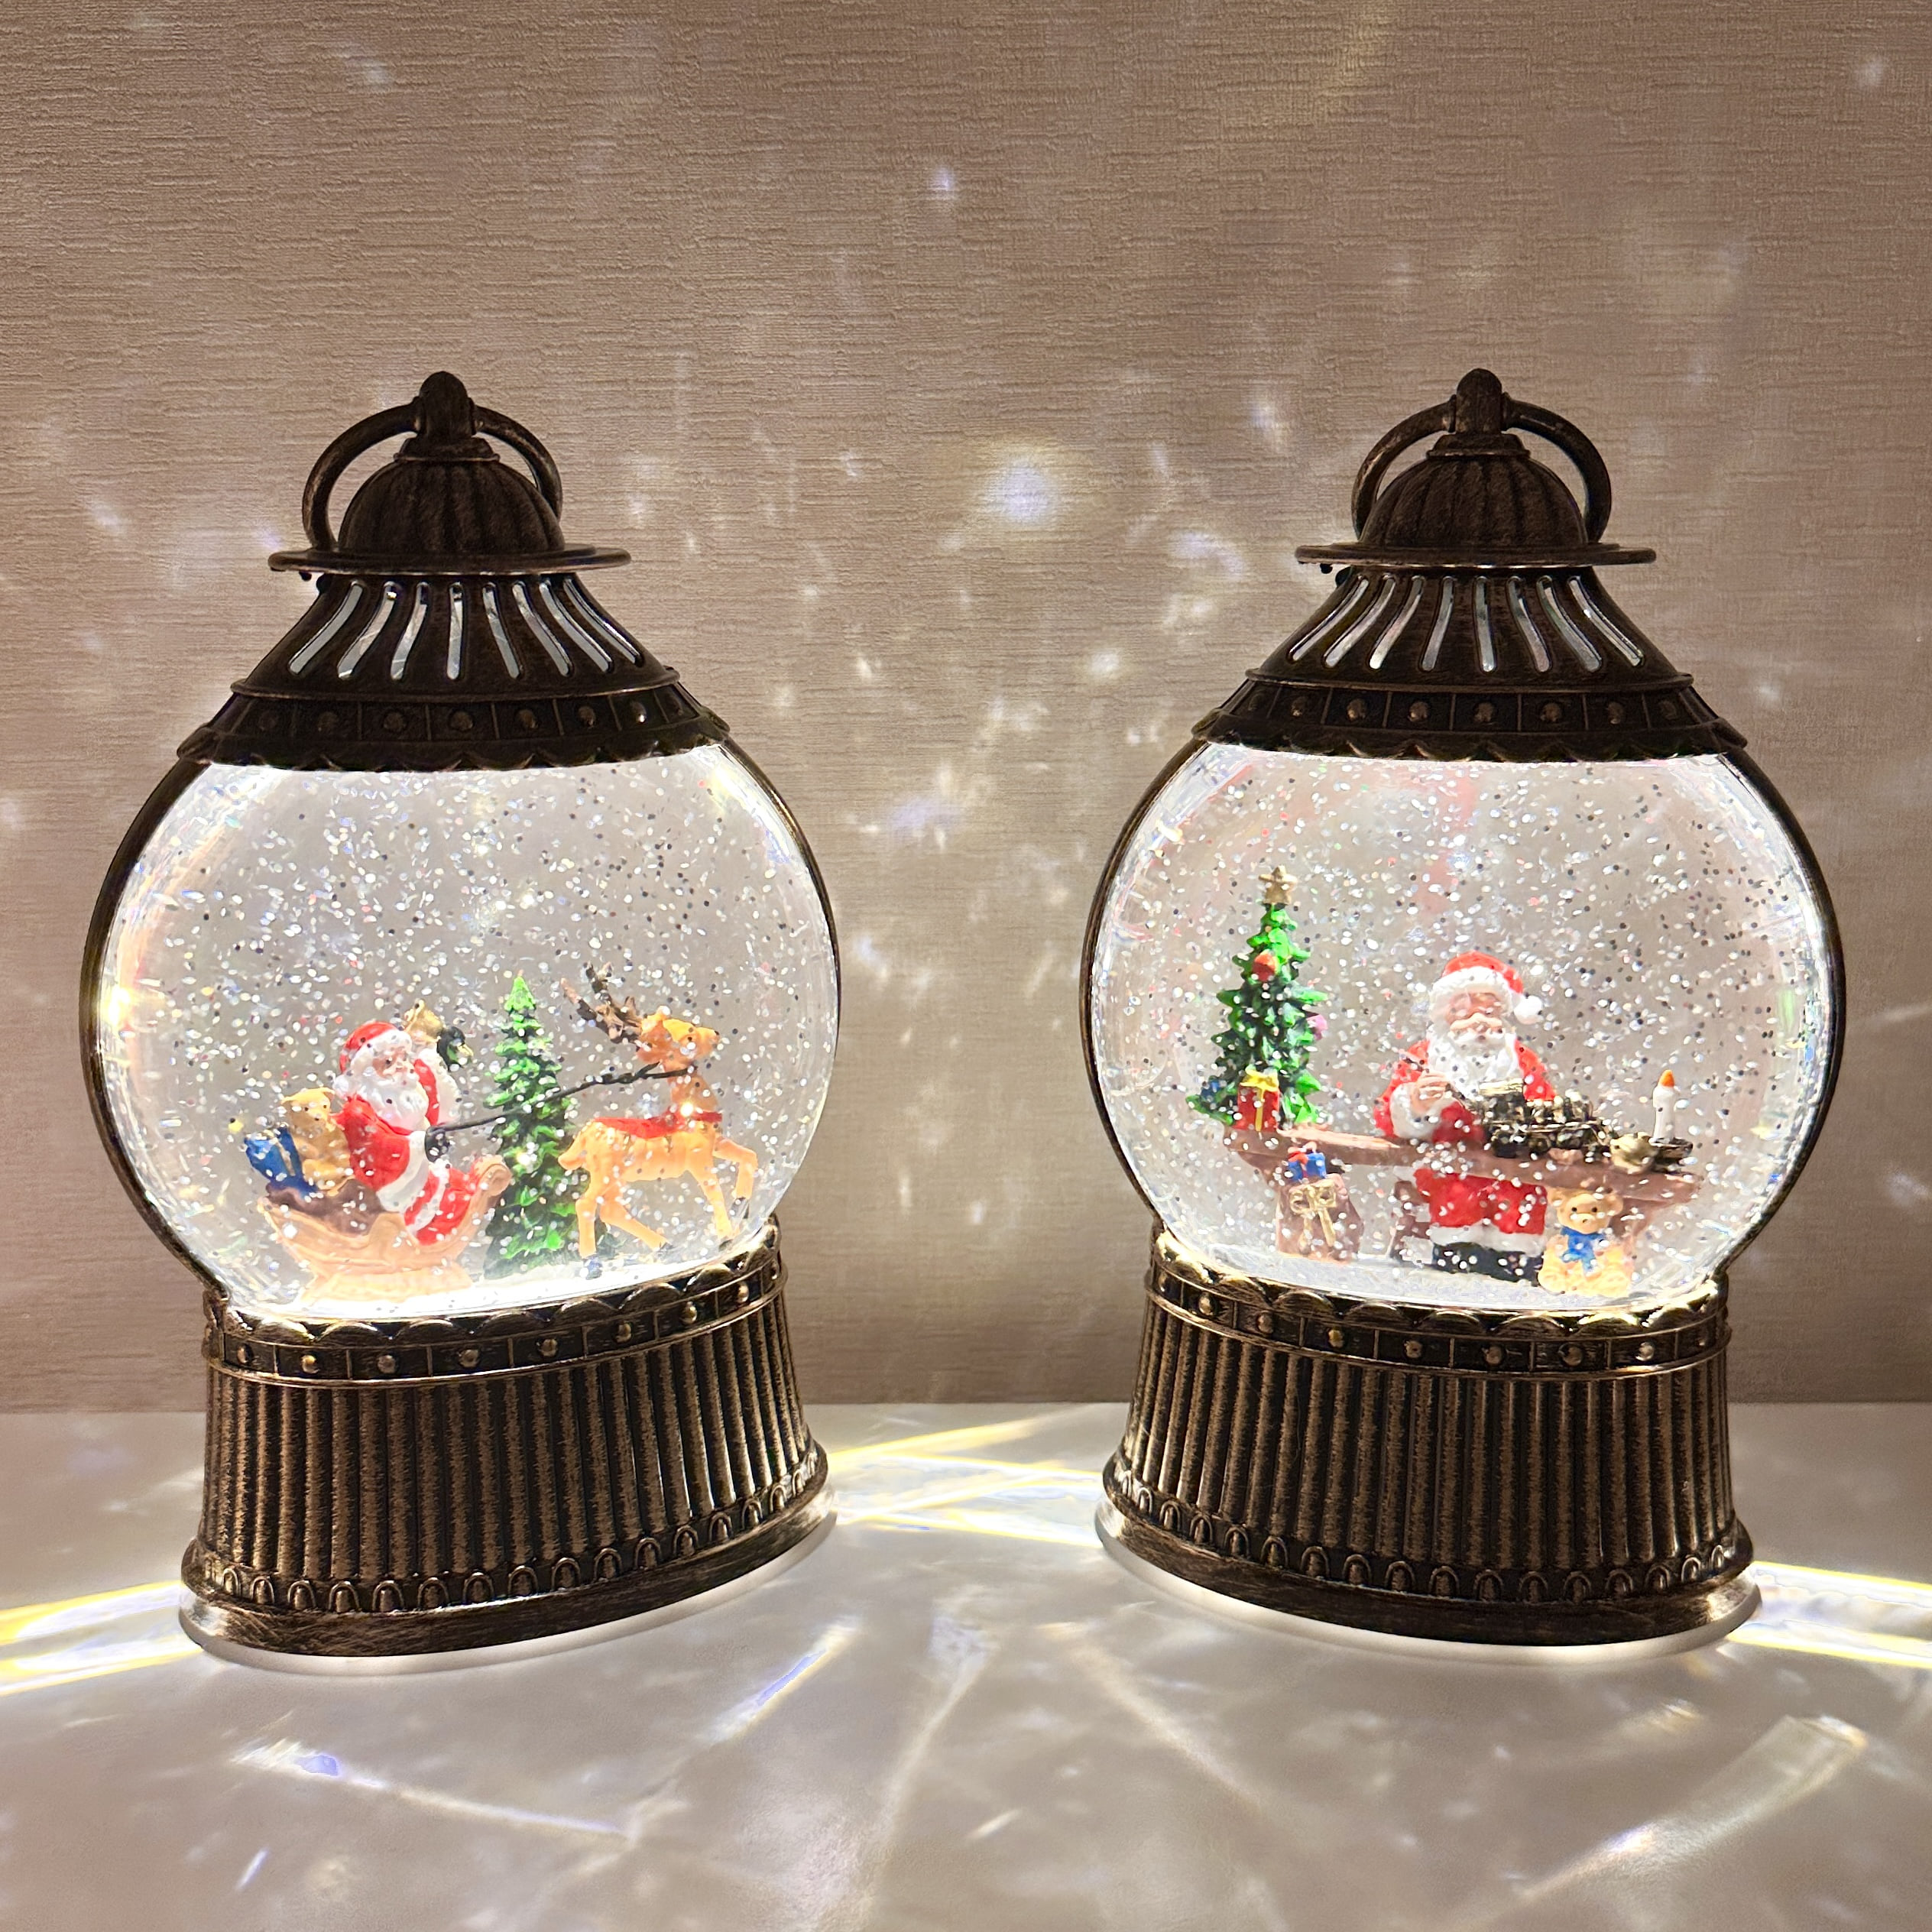 크리스마스 원형 랜턴 오르골 워터볼 LED 조명 인테리어소품 선물 트리 산타 눈사람